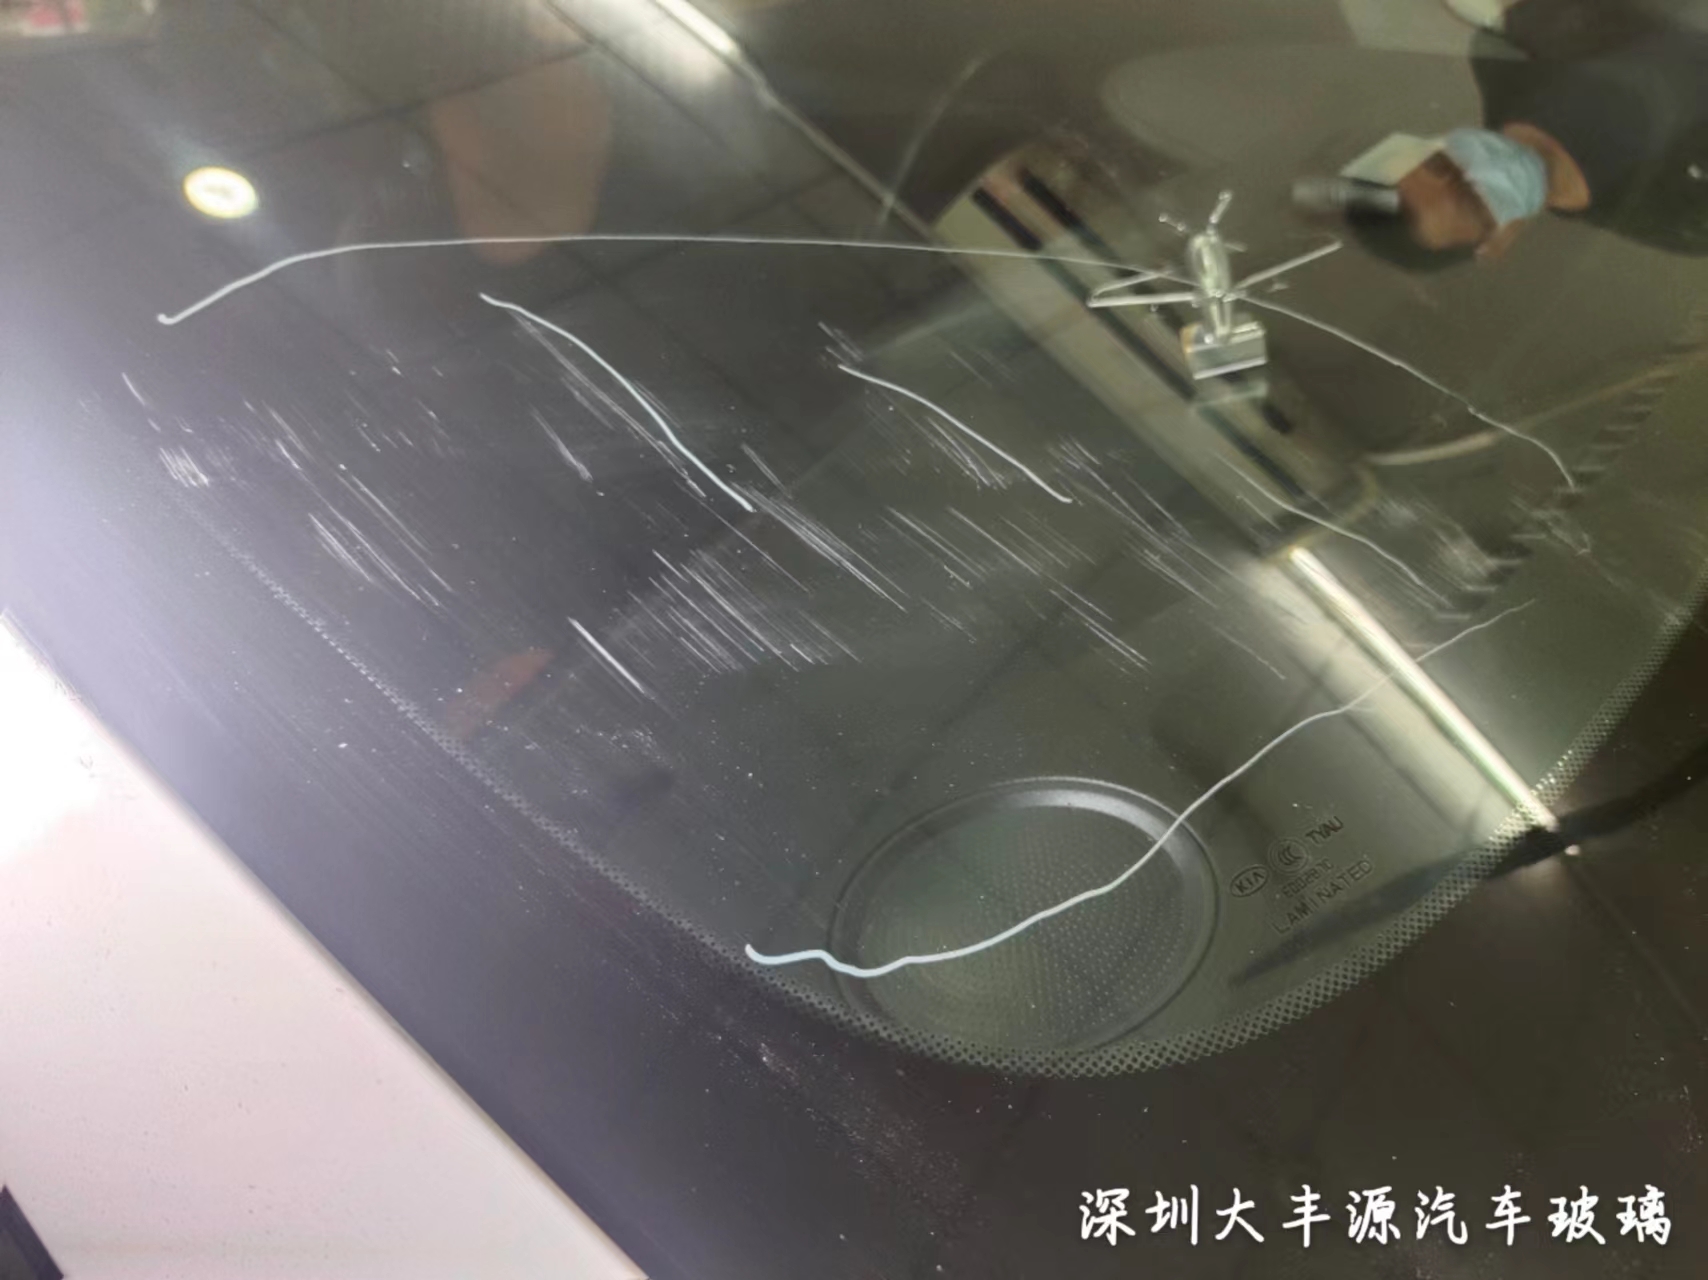 汽车前挡风玻璃划痕怎么处理？汽车挡风玻璃划痕修复最佳办法